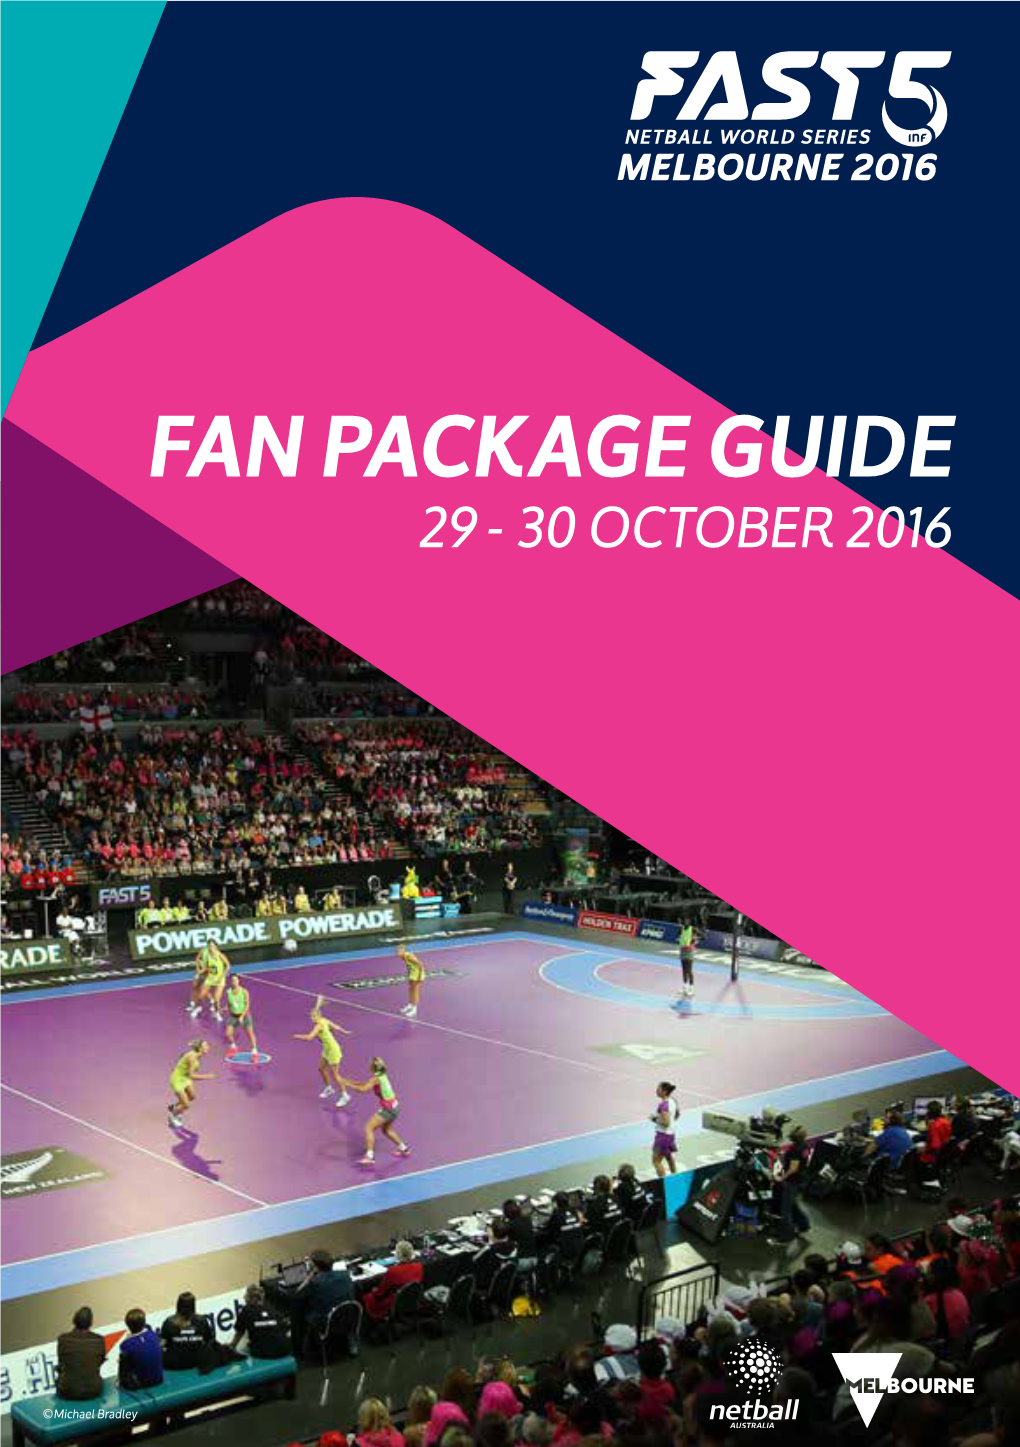 Fan Package Guide 29 - 30 October 2016